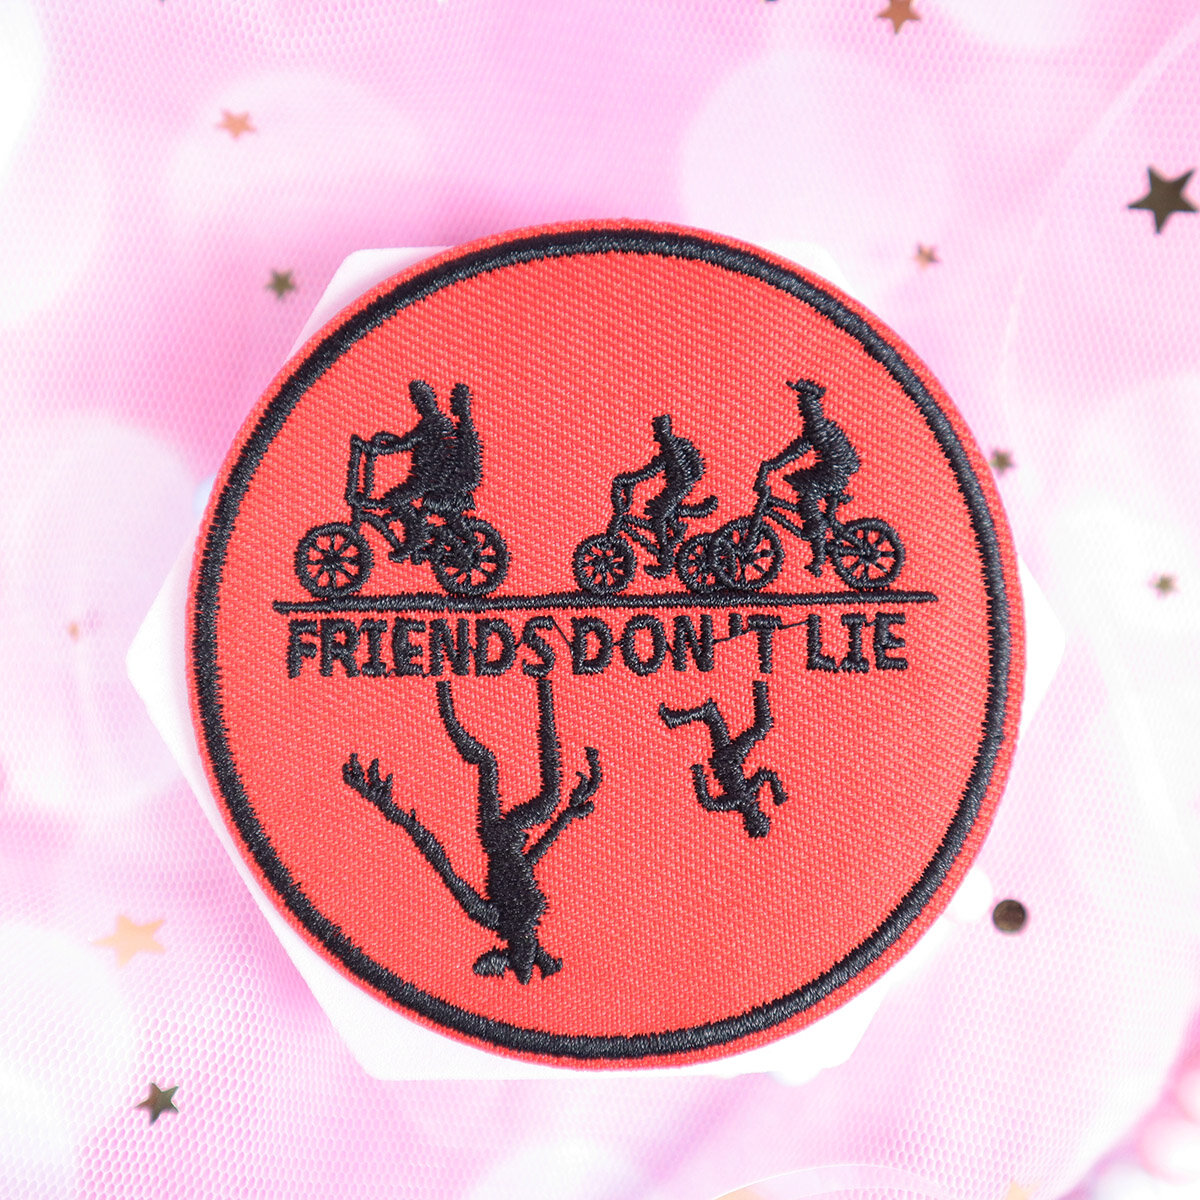 TygmÃ¤rke - Stranger Things, Friends donÂ´t lie